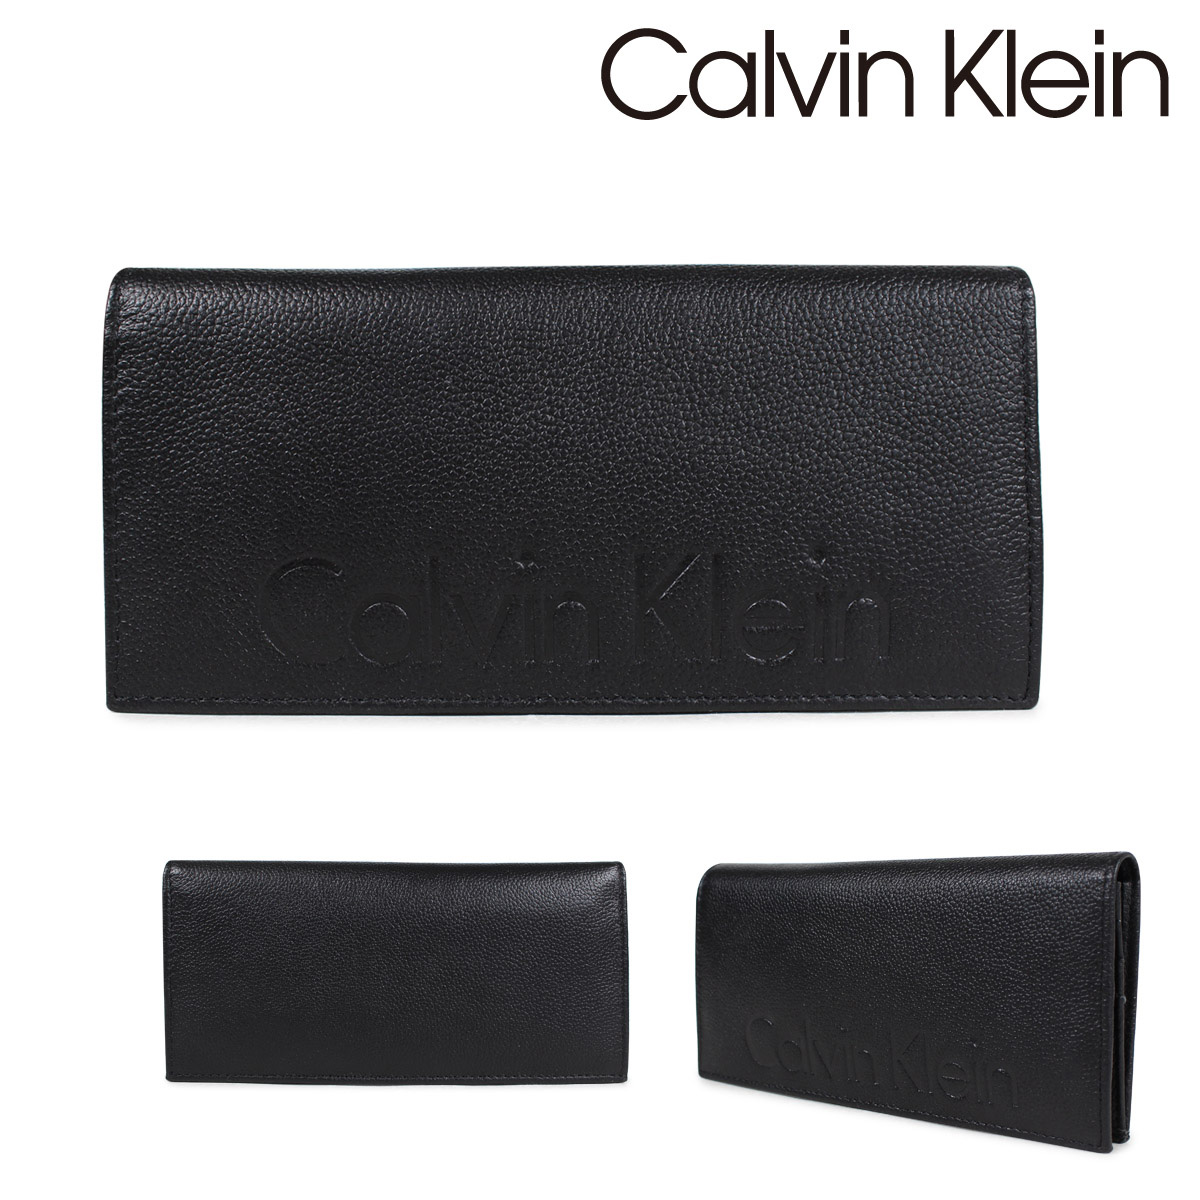 calvin klein wallets online